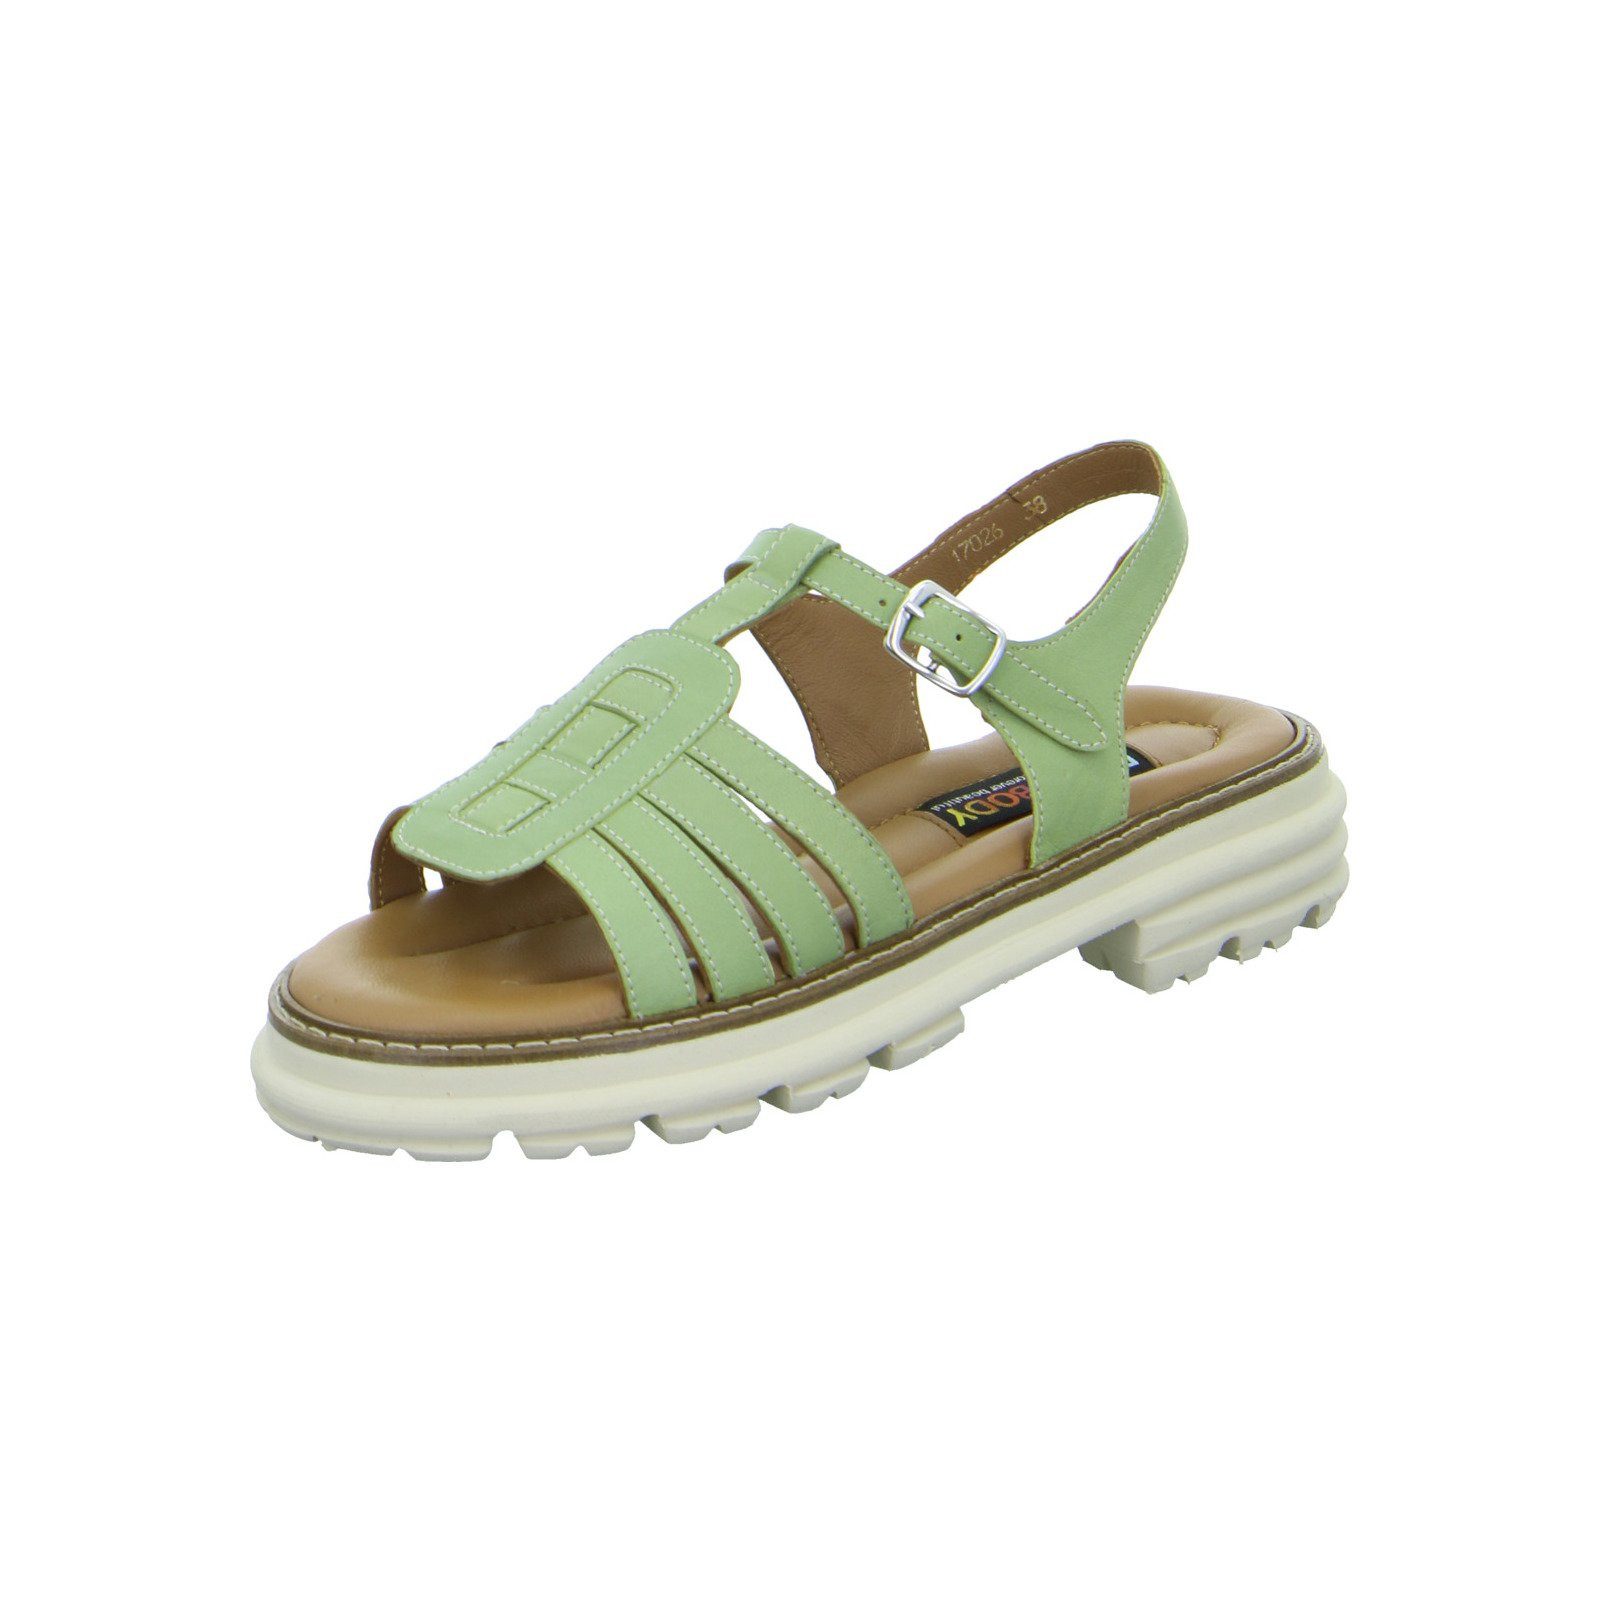 Everybody Cardamomo - Damen Schuhe Sandalette Glattleder grün